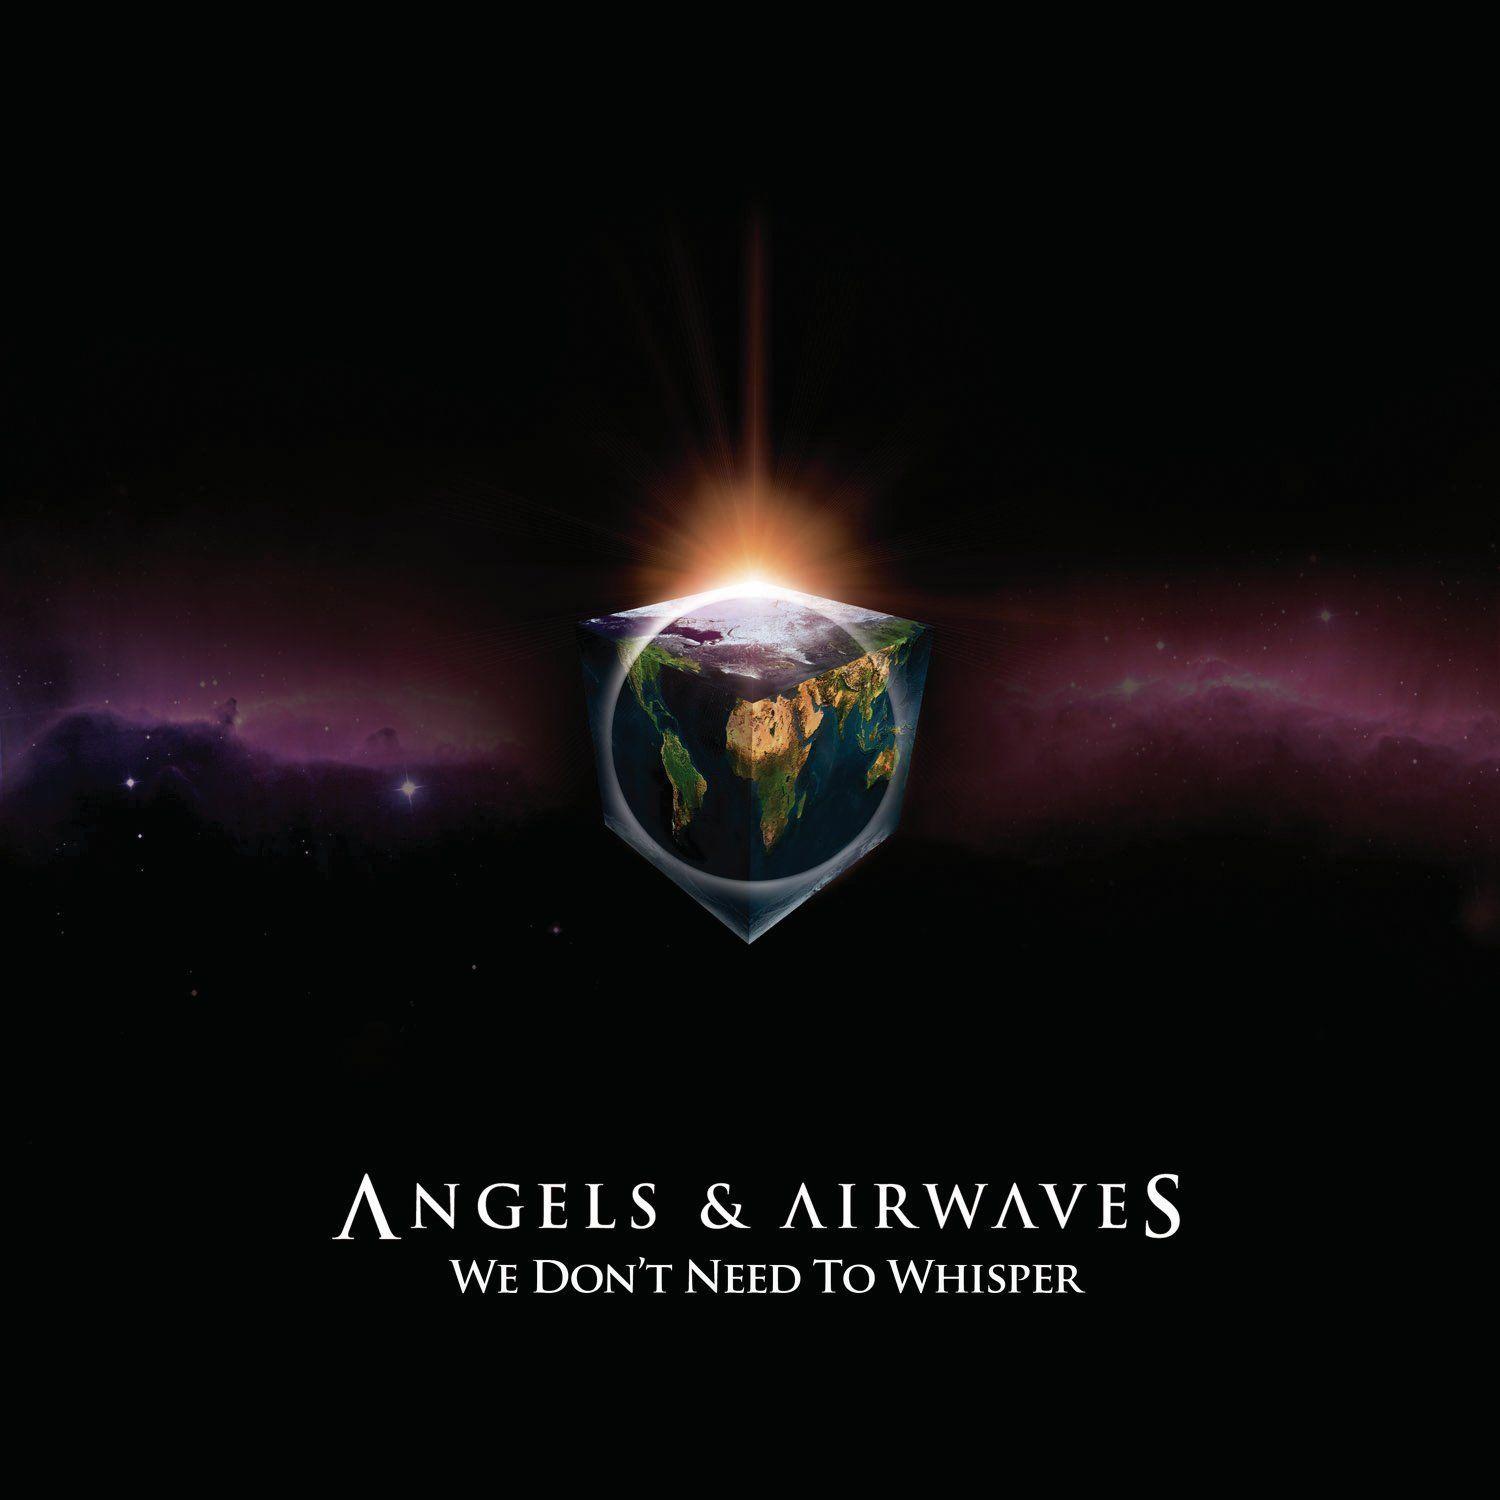 Angels & Airwaves Wallpaper, Angels & Airwaves Band Wallpaper